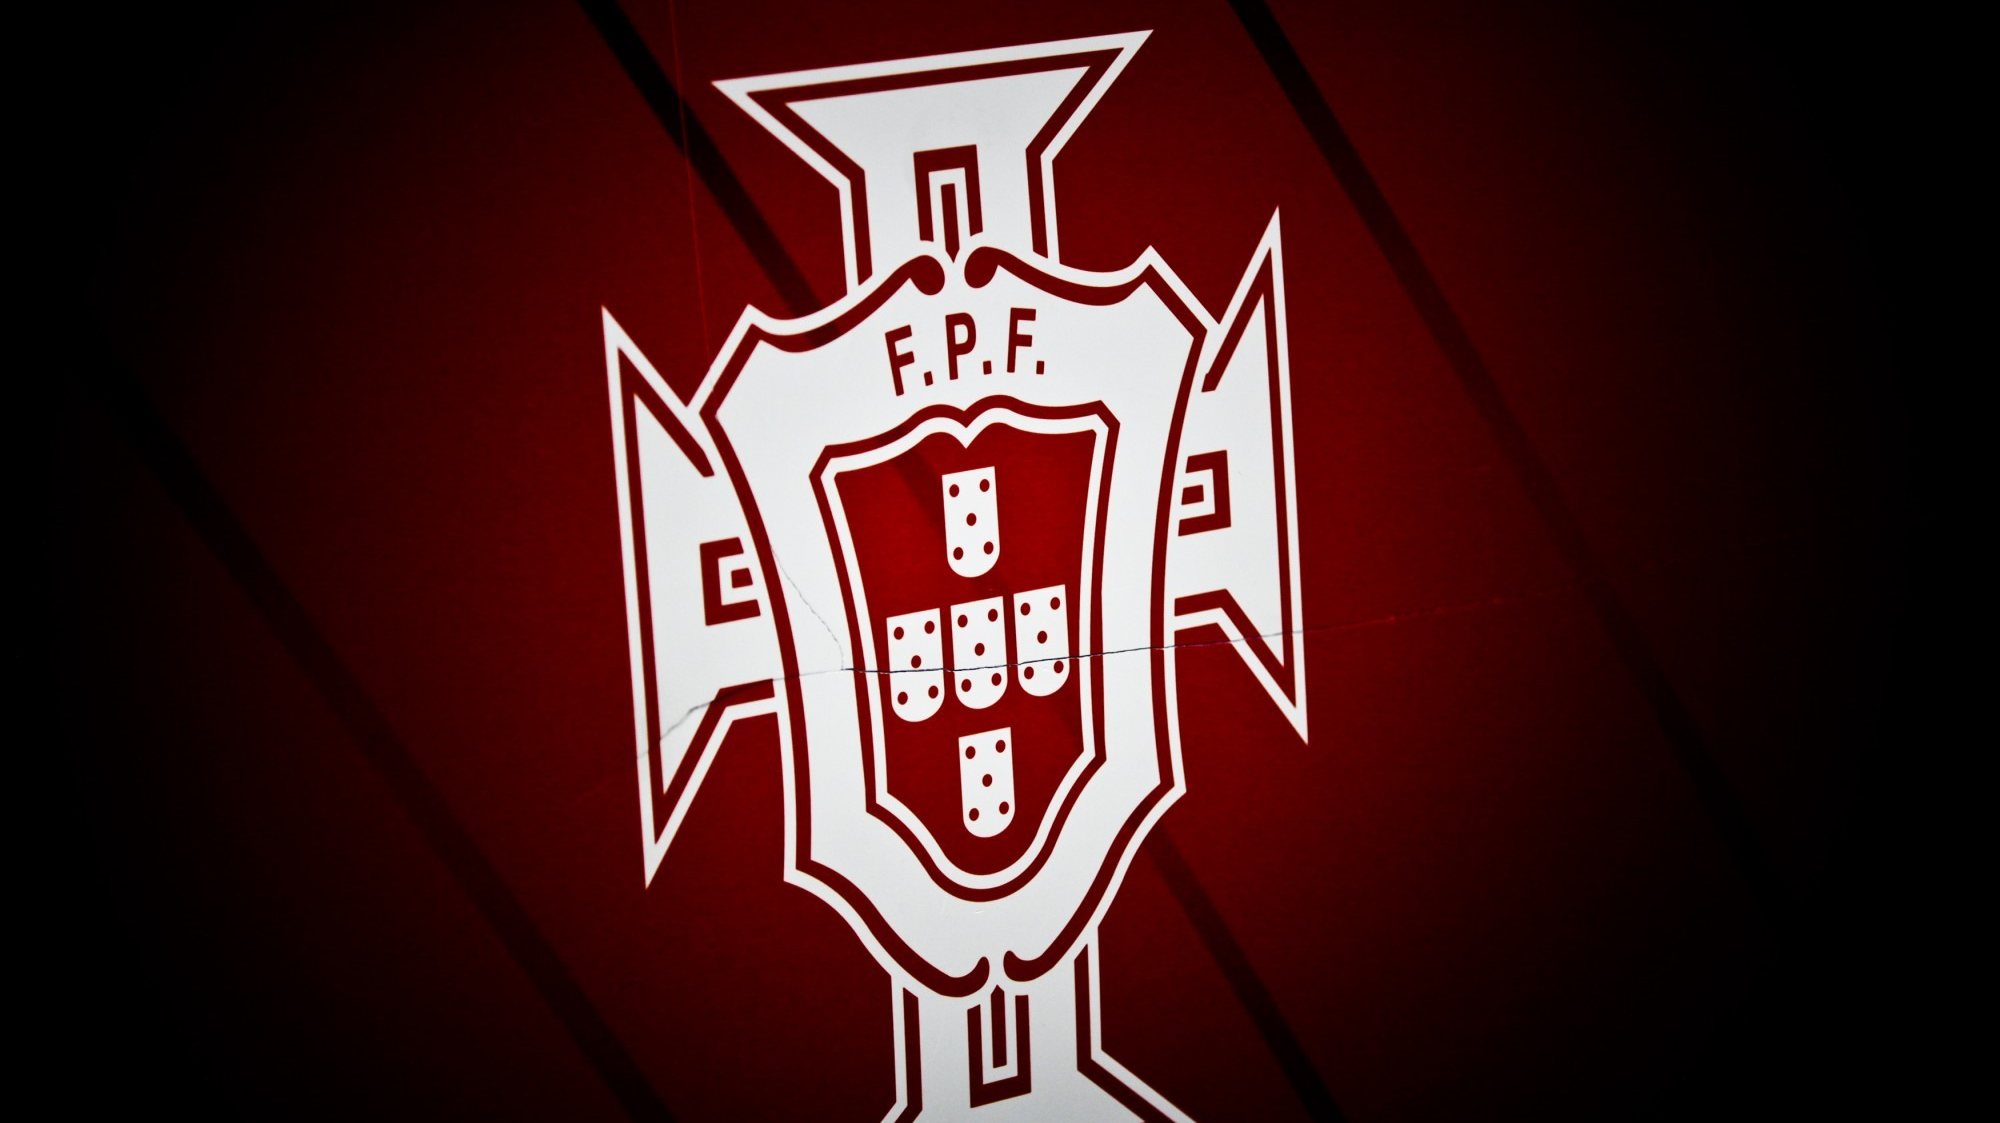 Logotipo da Federação Portuguesa de Futebol